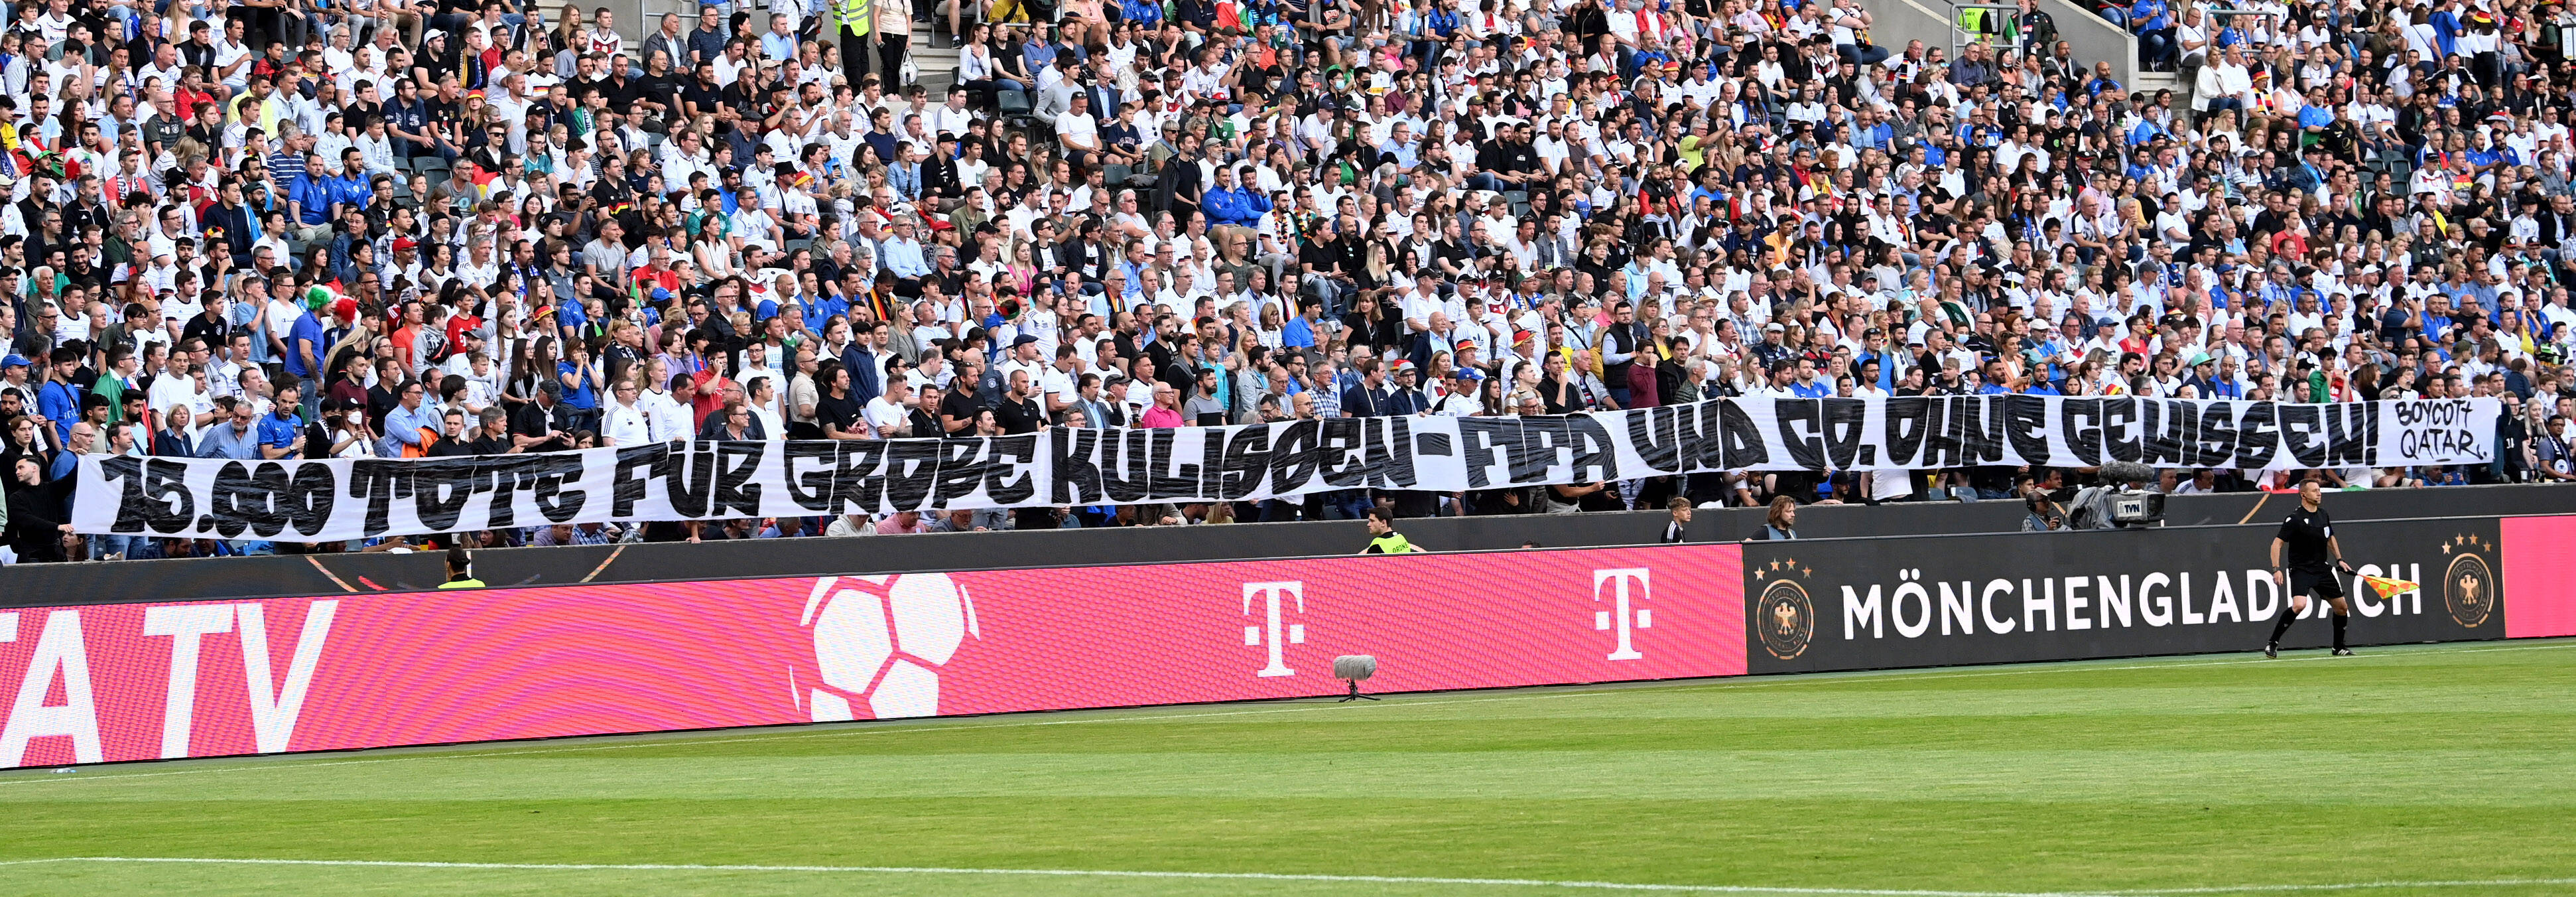 Mann machte im Stadion auf Menschenrechte aufmerksam: DFB schaltet Polizei  ein